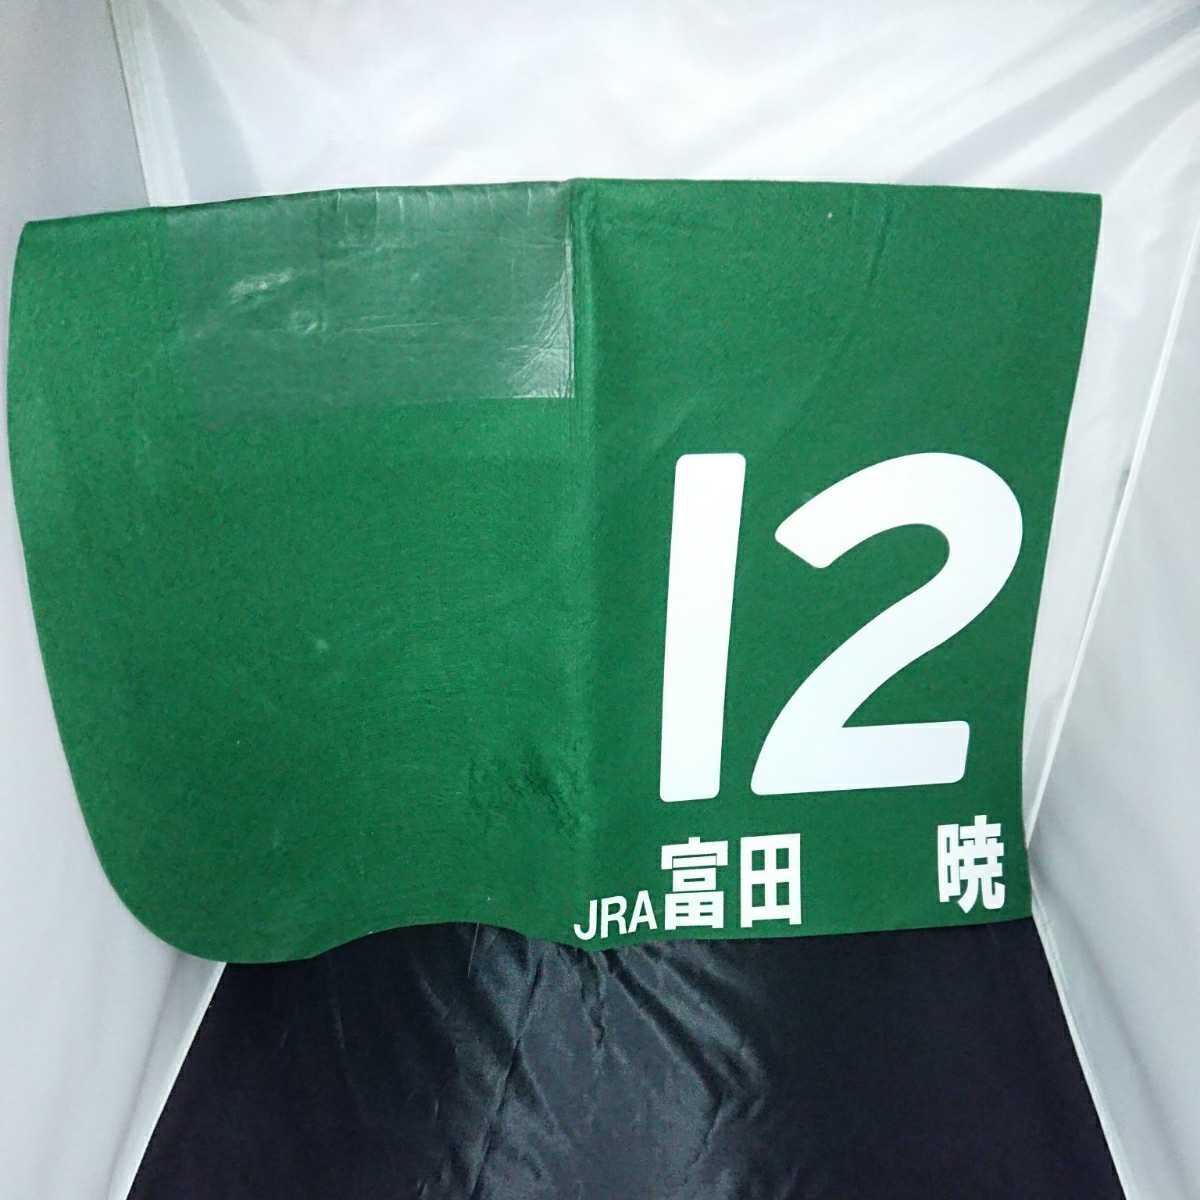 超安い品質 2着時 第1戦 トライアルラウンド ヤングジョッキーシリーズ 2018 富田暁騎手 JRA 実使用 スティルフル ゼッケン ゼッケン